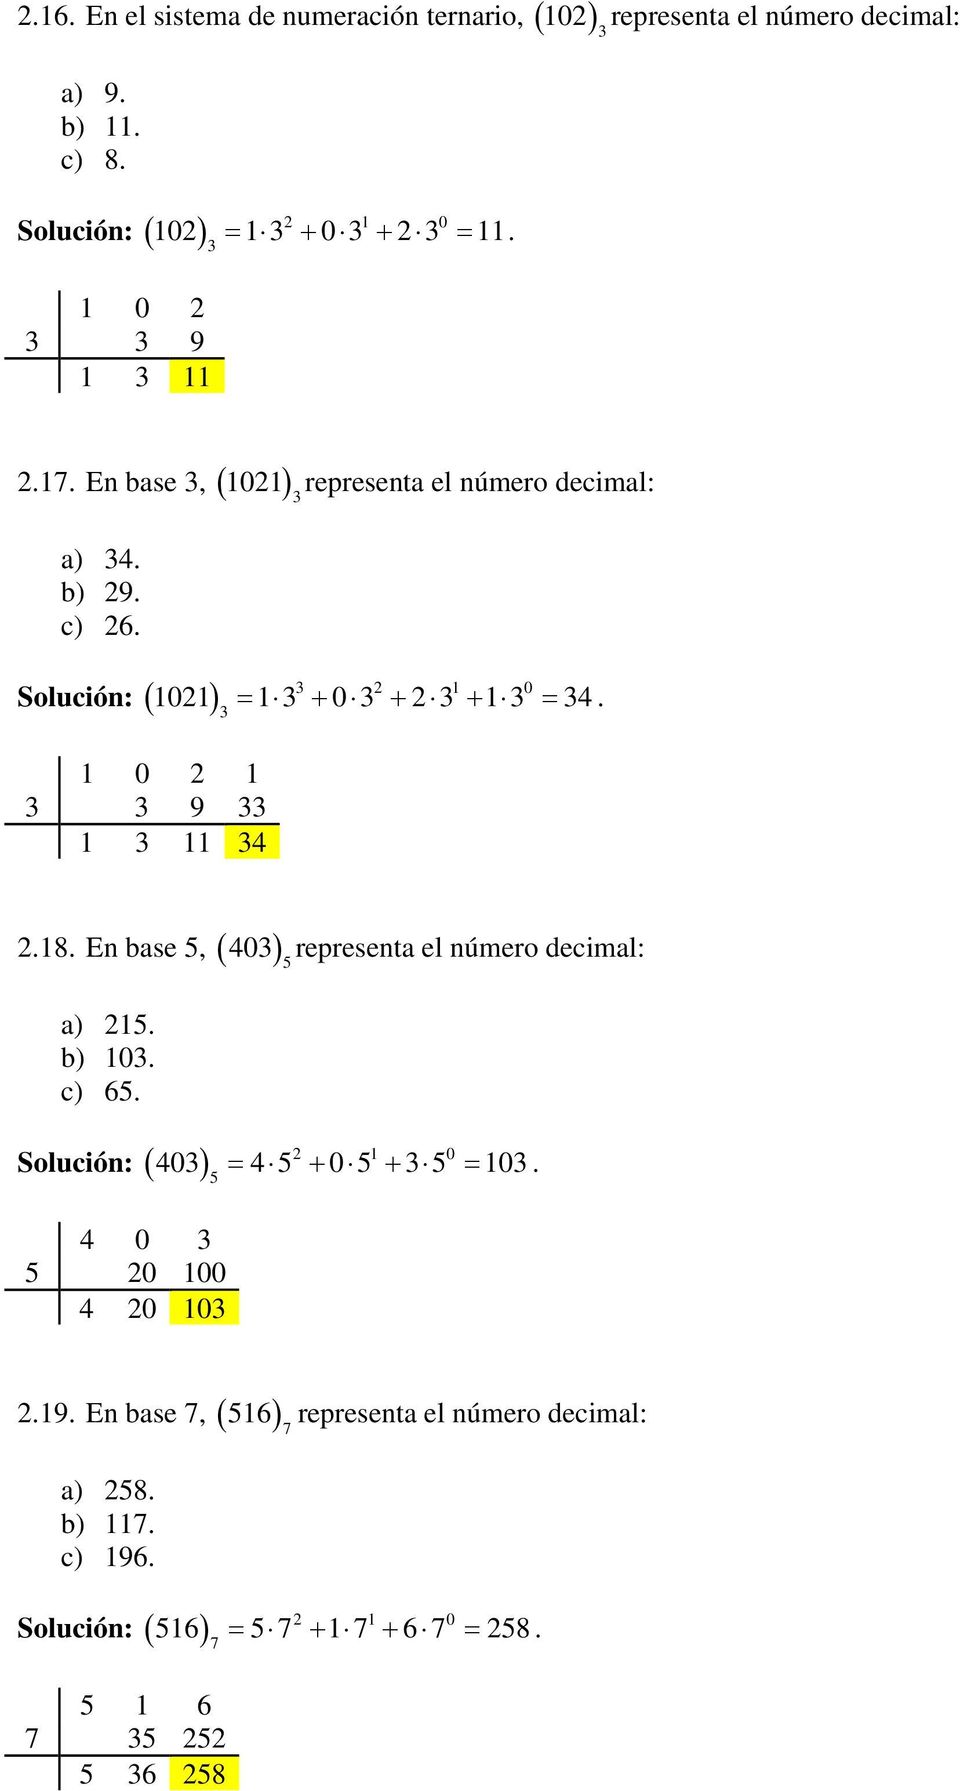 Solución: 3 1 0 1 0 1 3 3 9 33 1 3 11 34 101 13 03 3 13 34. 3.18. En base 5, 403 5 representa el número decimal: a) 15. b) 103. c) 65.